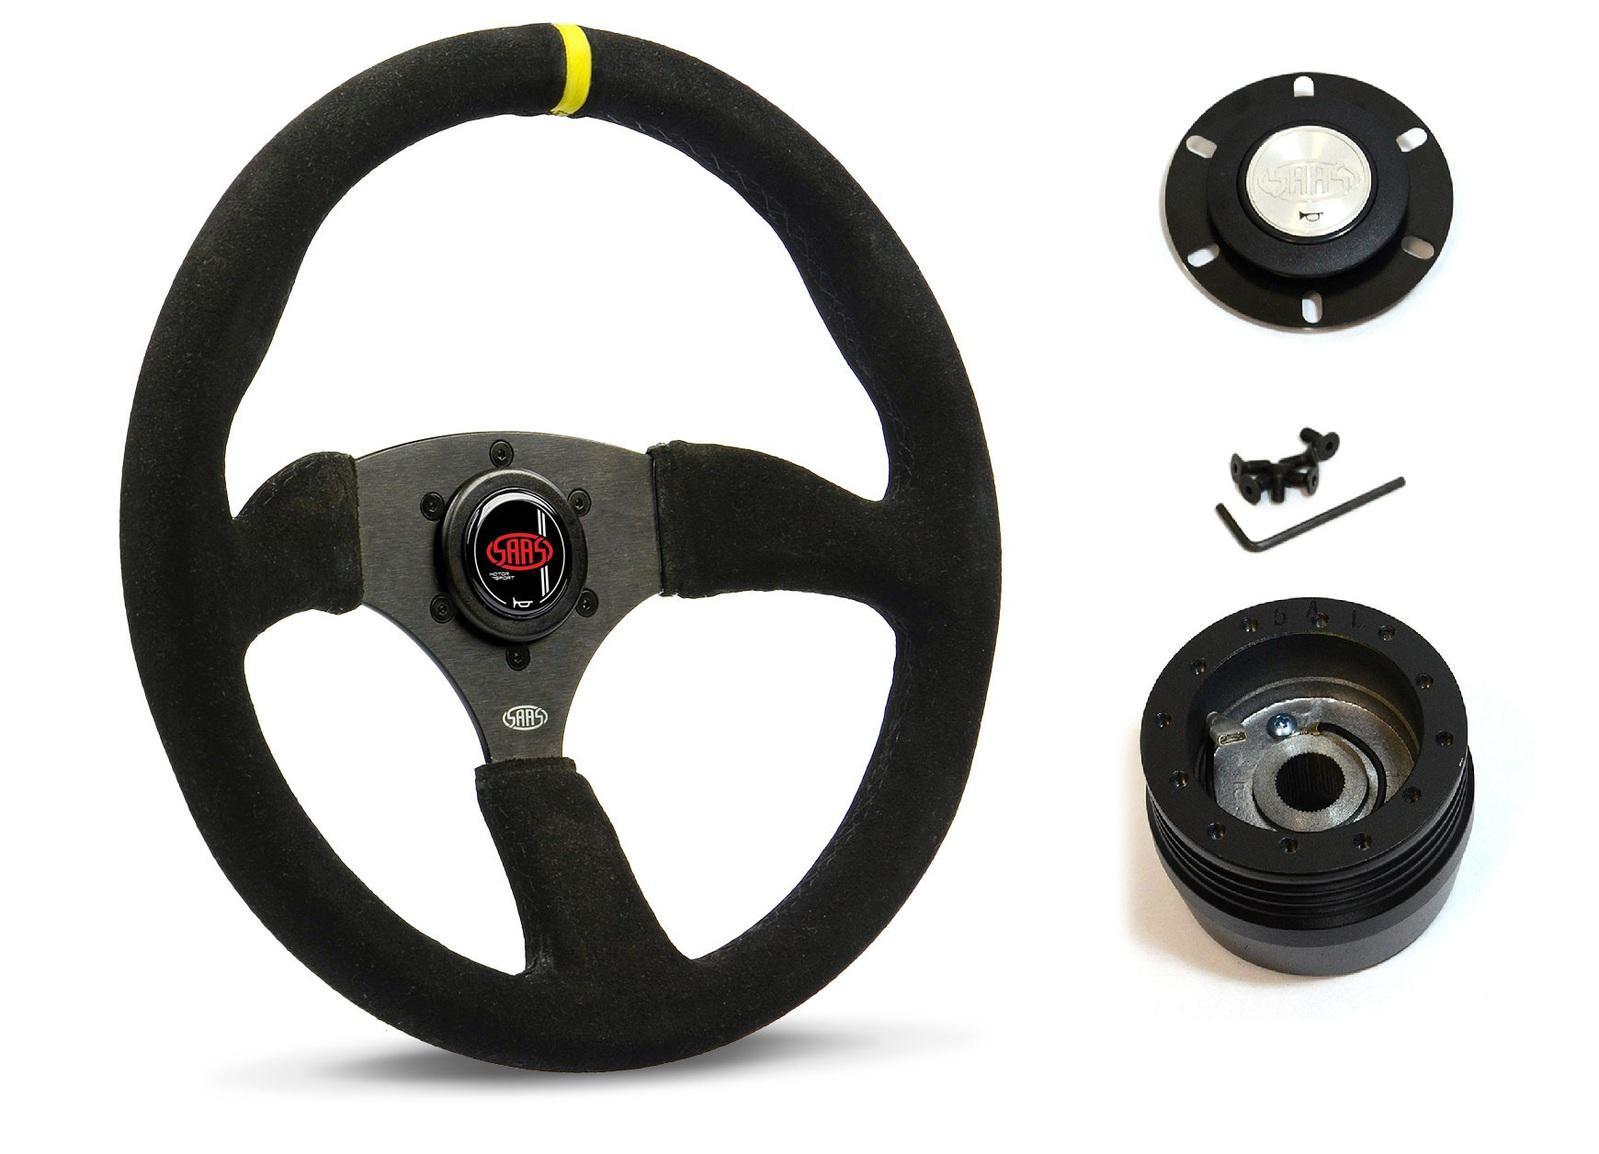 SAAS Steering Wheel Suede 14" ADR Tokyo Motorsport Black Spoke + Indicator SWMS2 and SAAS boss kit for Datsun 120Y 1973-1979